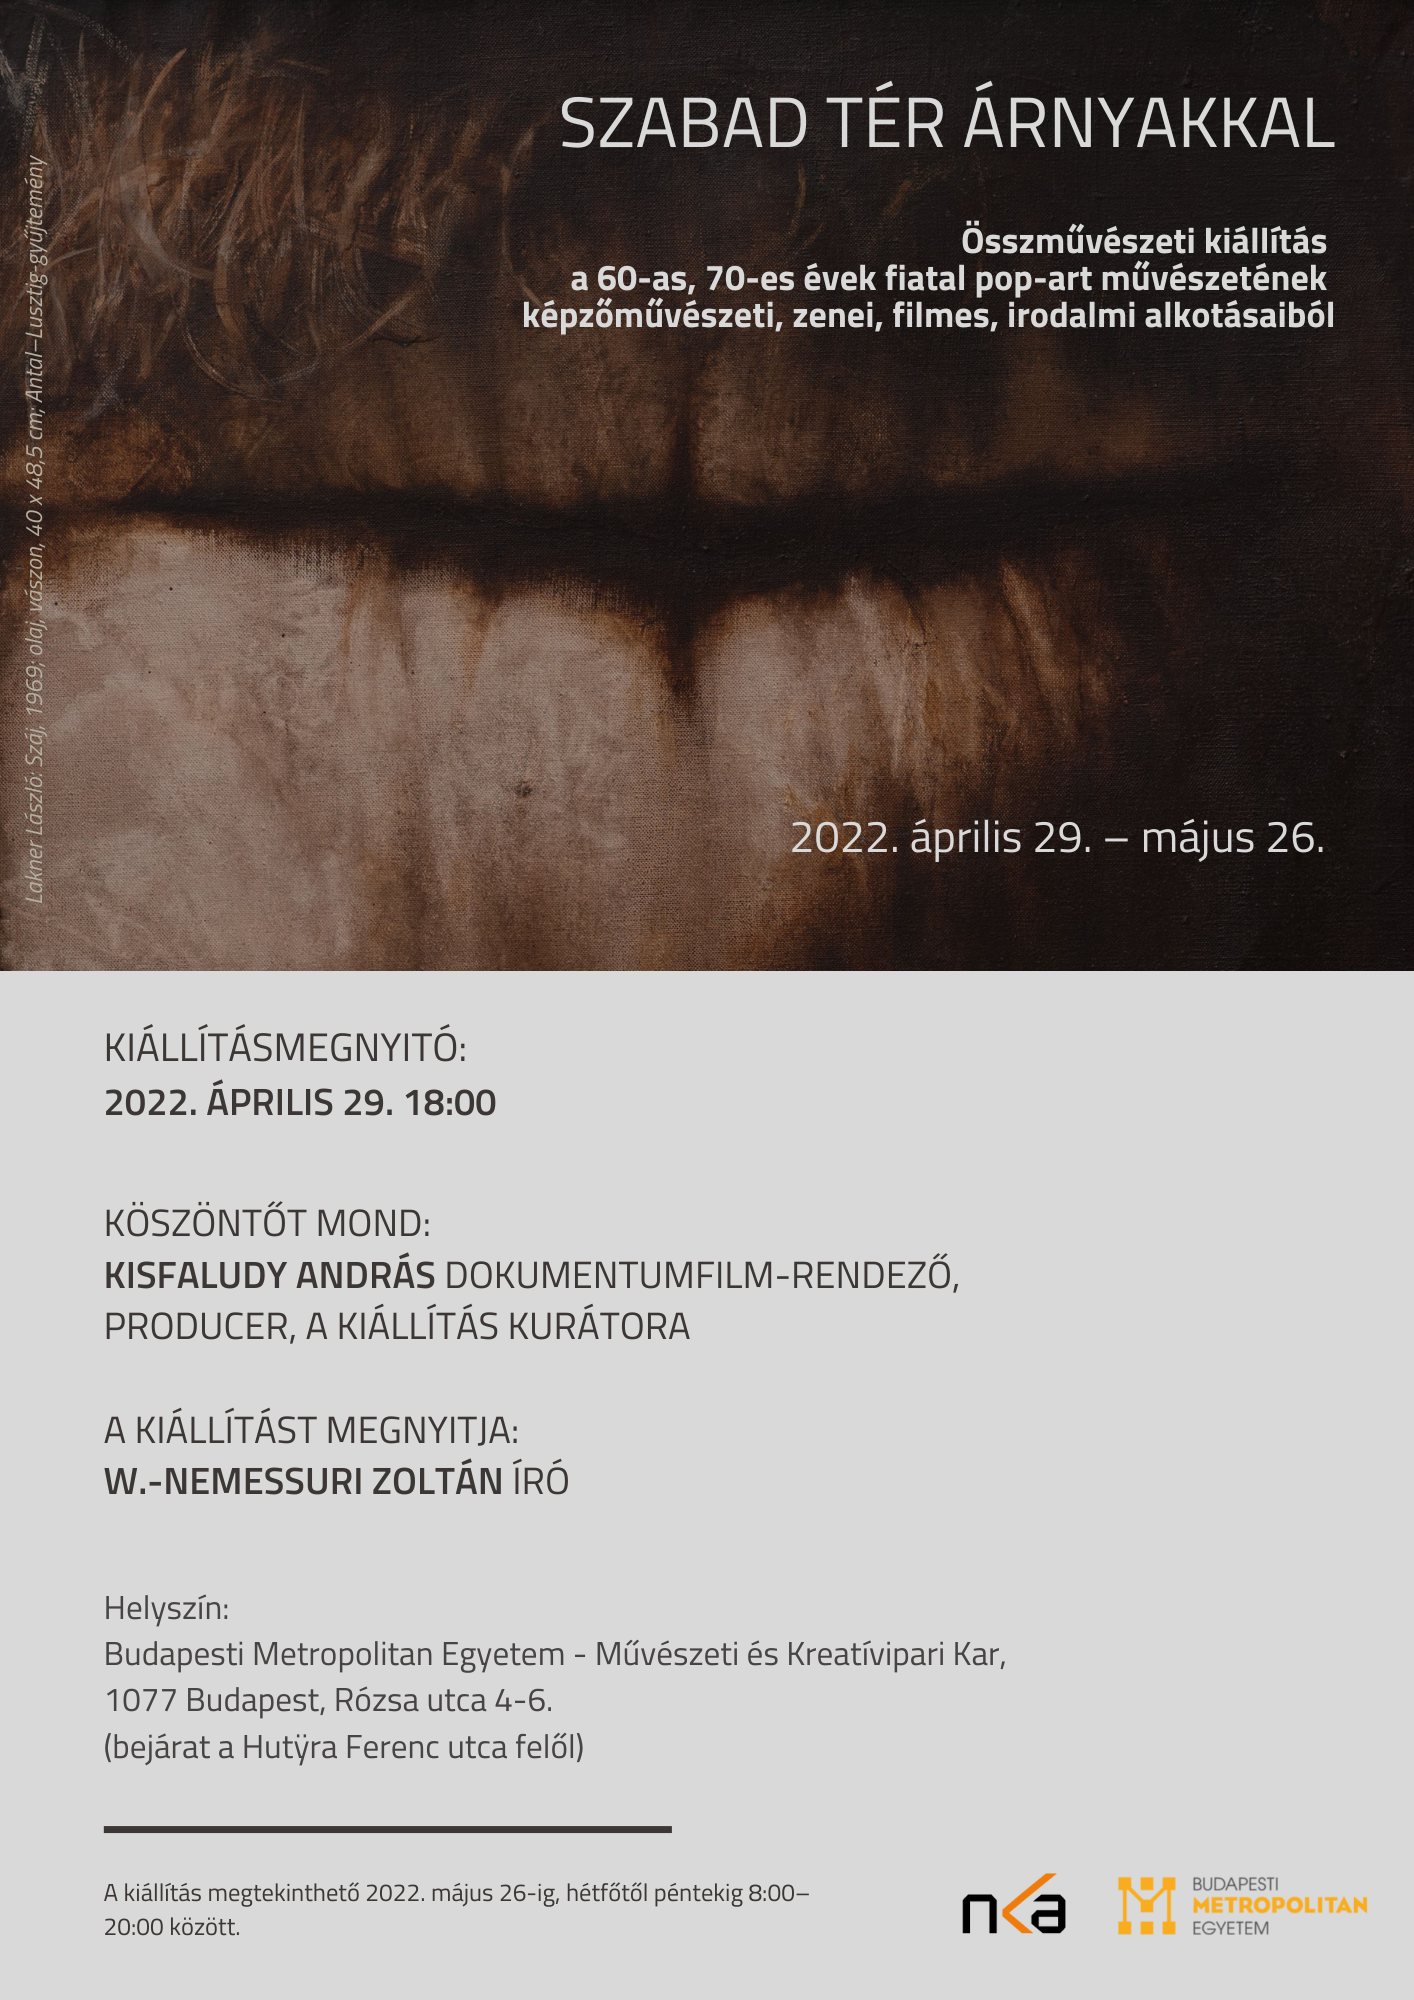  Szabad tér árnyakkal - új, összművészeti kiállítás a Budapesti Metropolitan Egyetem campusán 